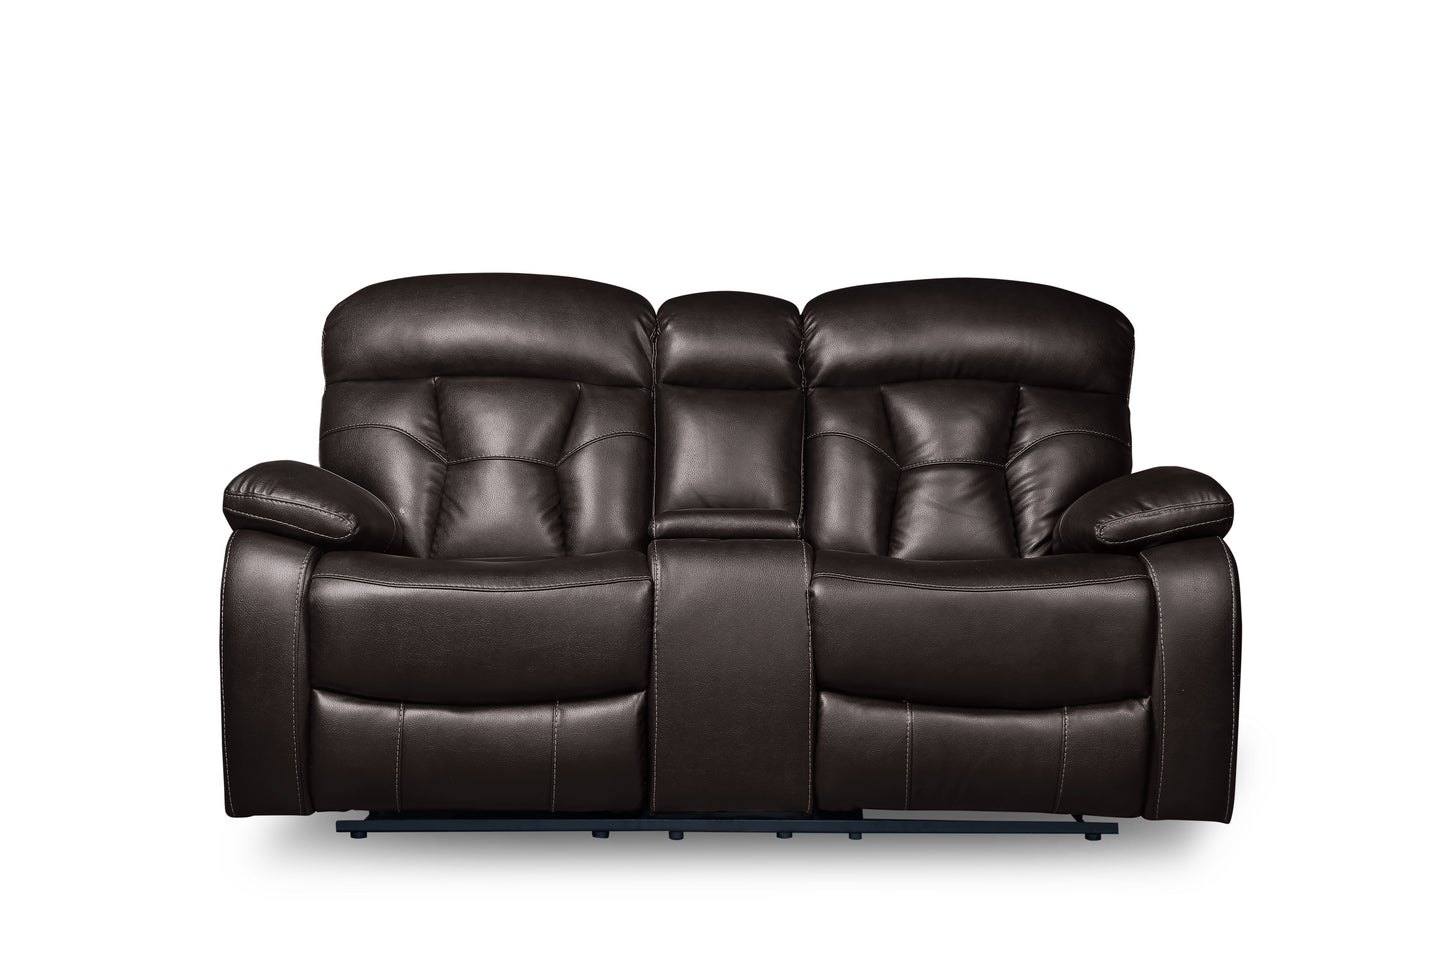 SH3216*3PW 3pc Set: Sofa, Love, Chair (Power)